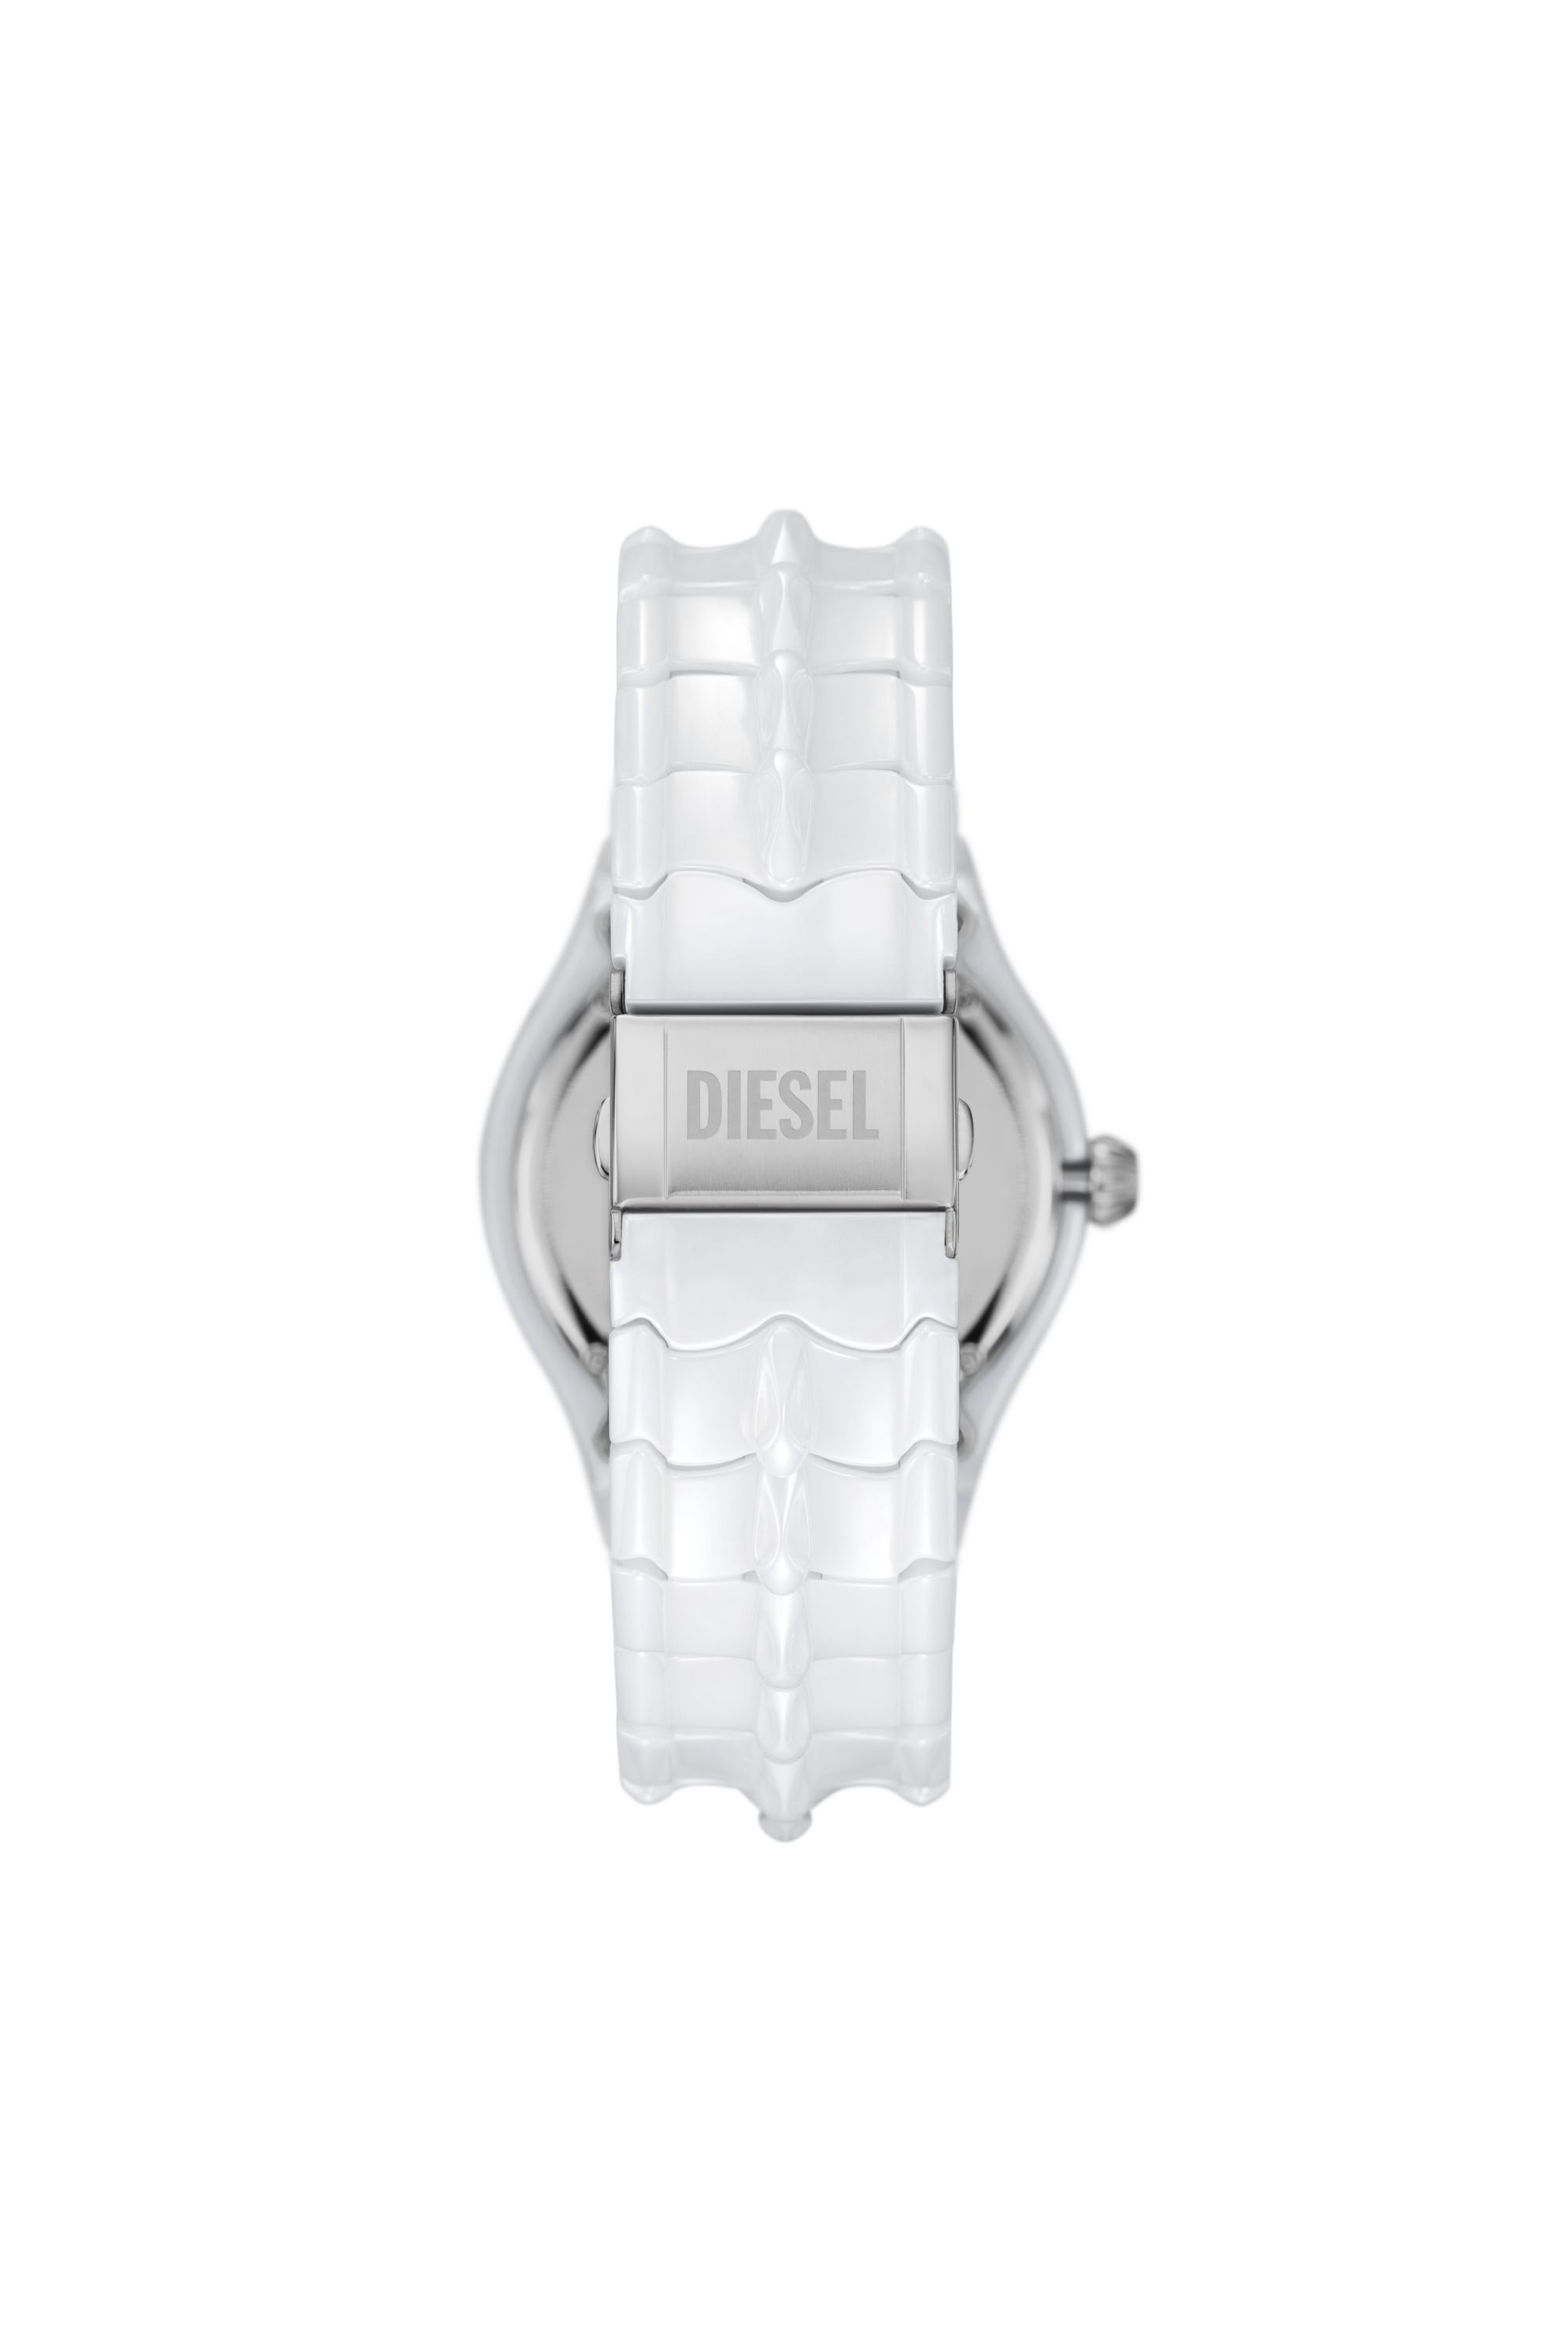 Diesel - DZ2197, Hombre Reloj Vert de cerámica blanca in Blanco - Image 3